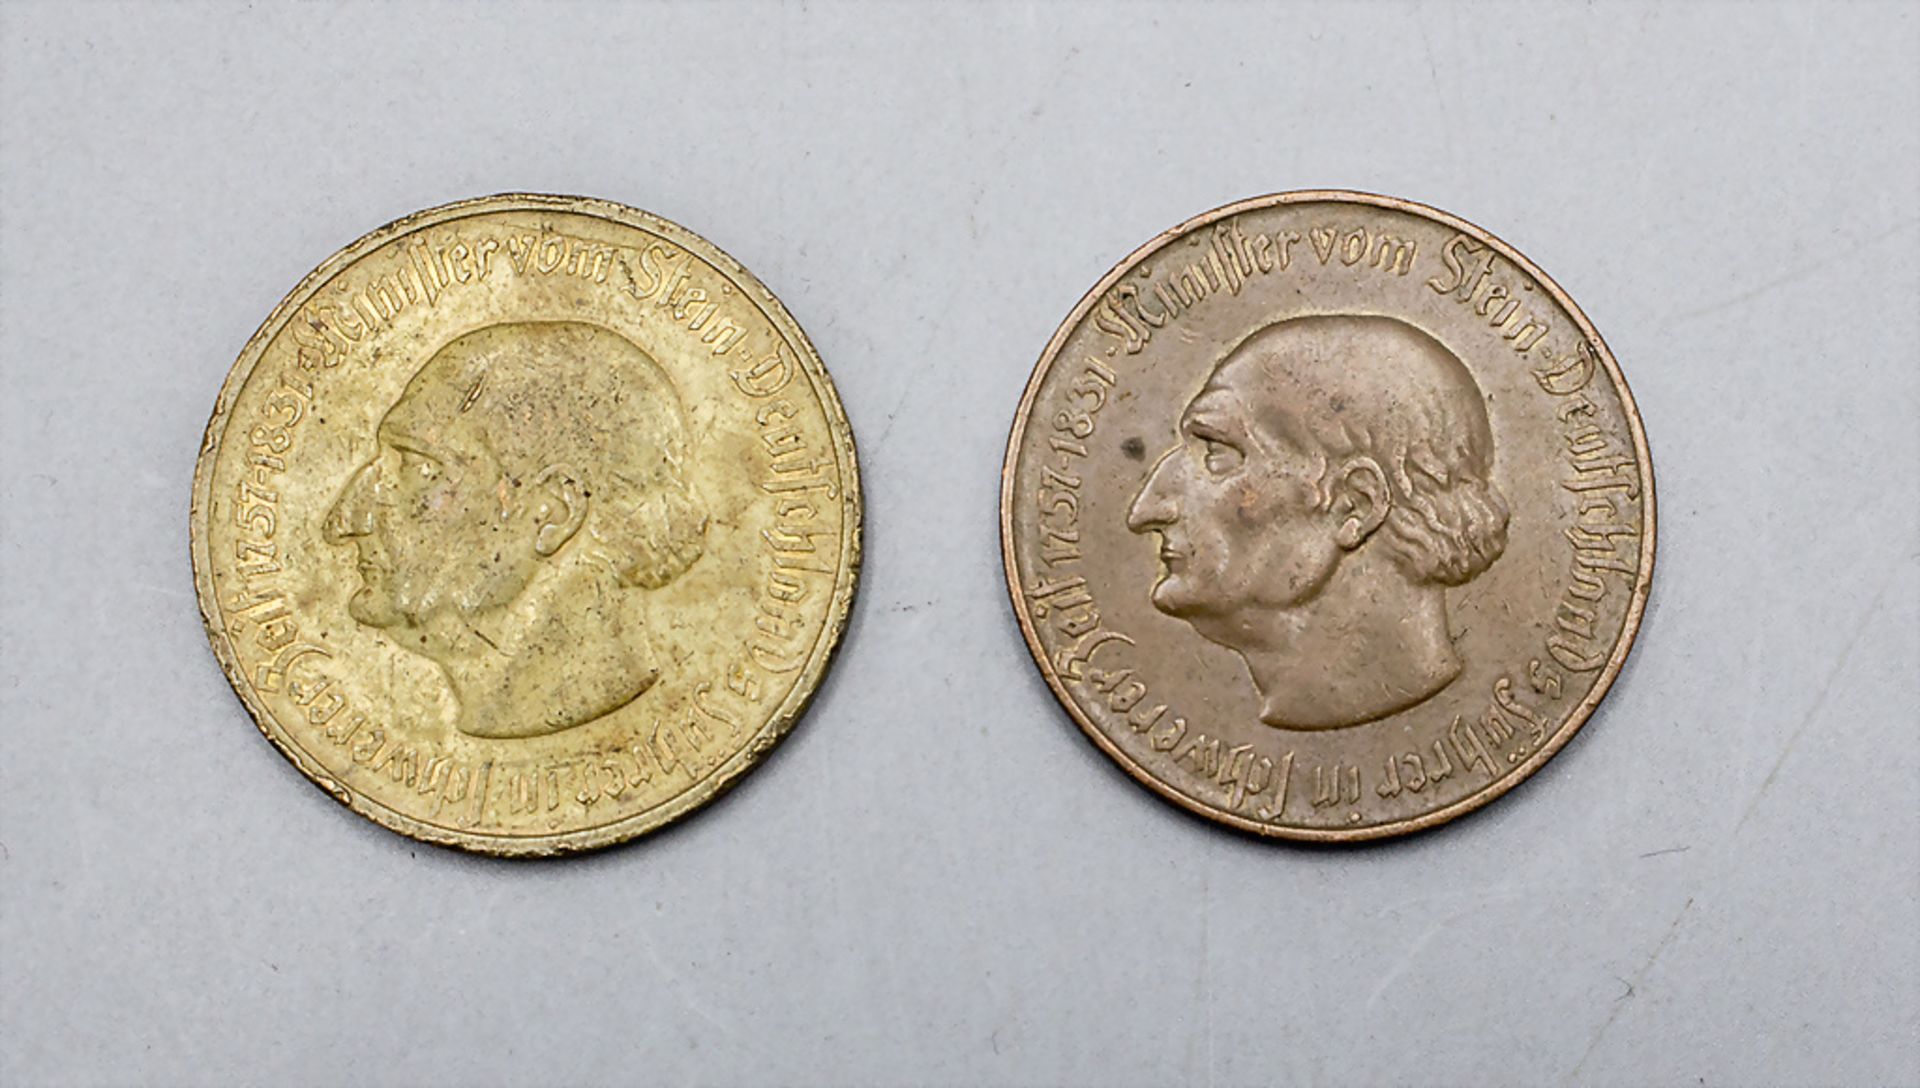 Zwei Münzen Notgeld / Two coins inflation coins, Westfalen, 1923